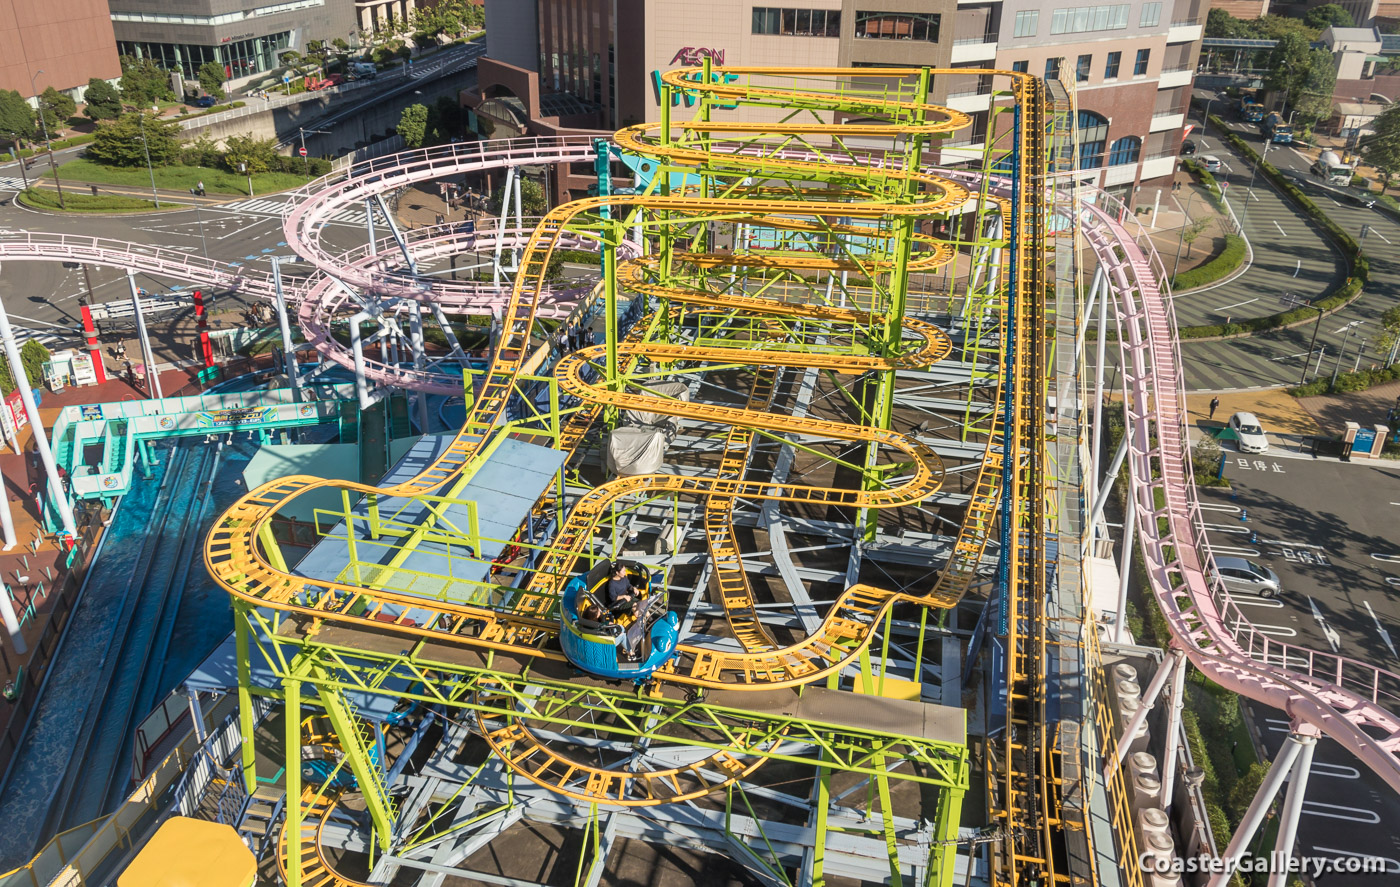 Spinning Coaster at Yokohama Cosmoworld in Japan